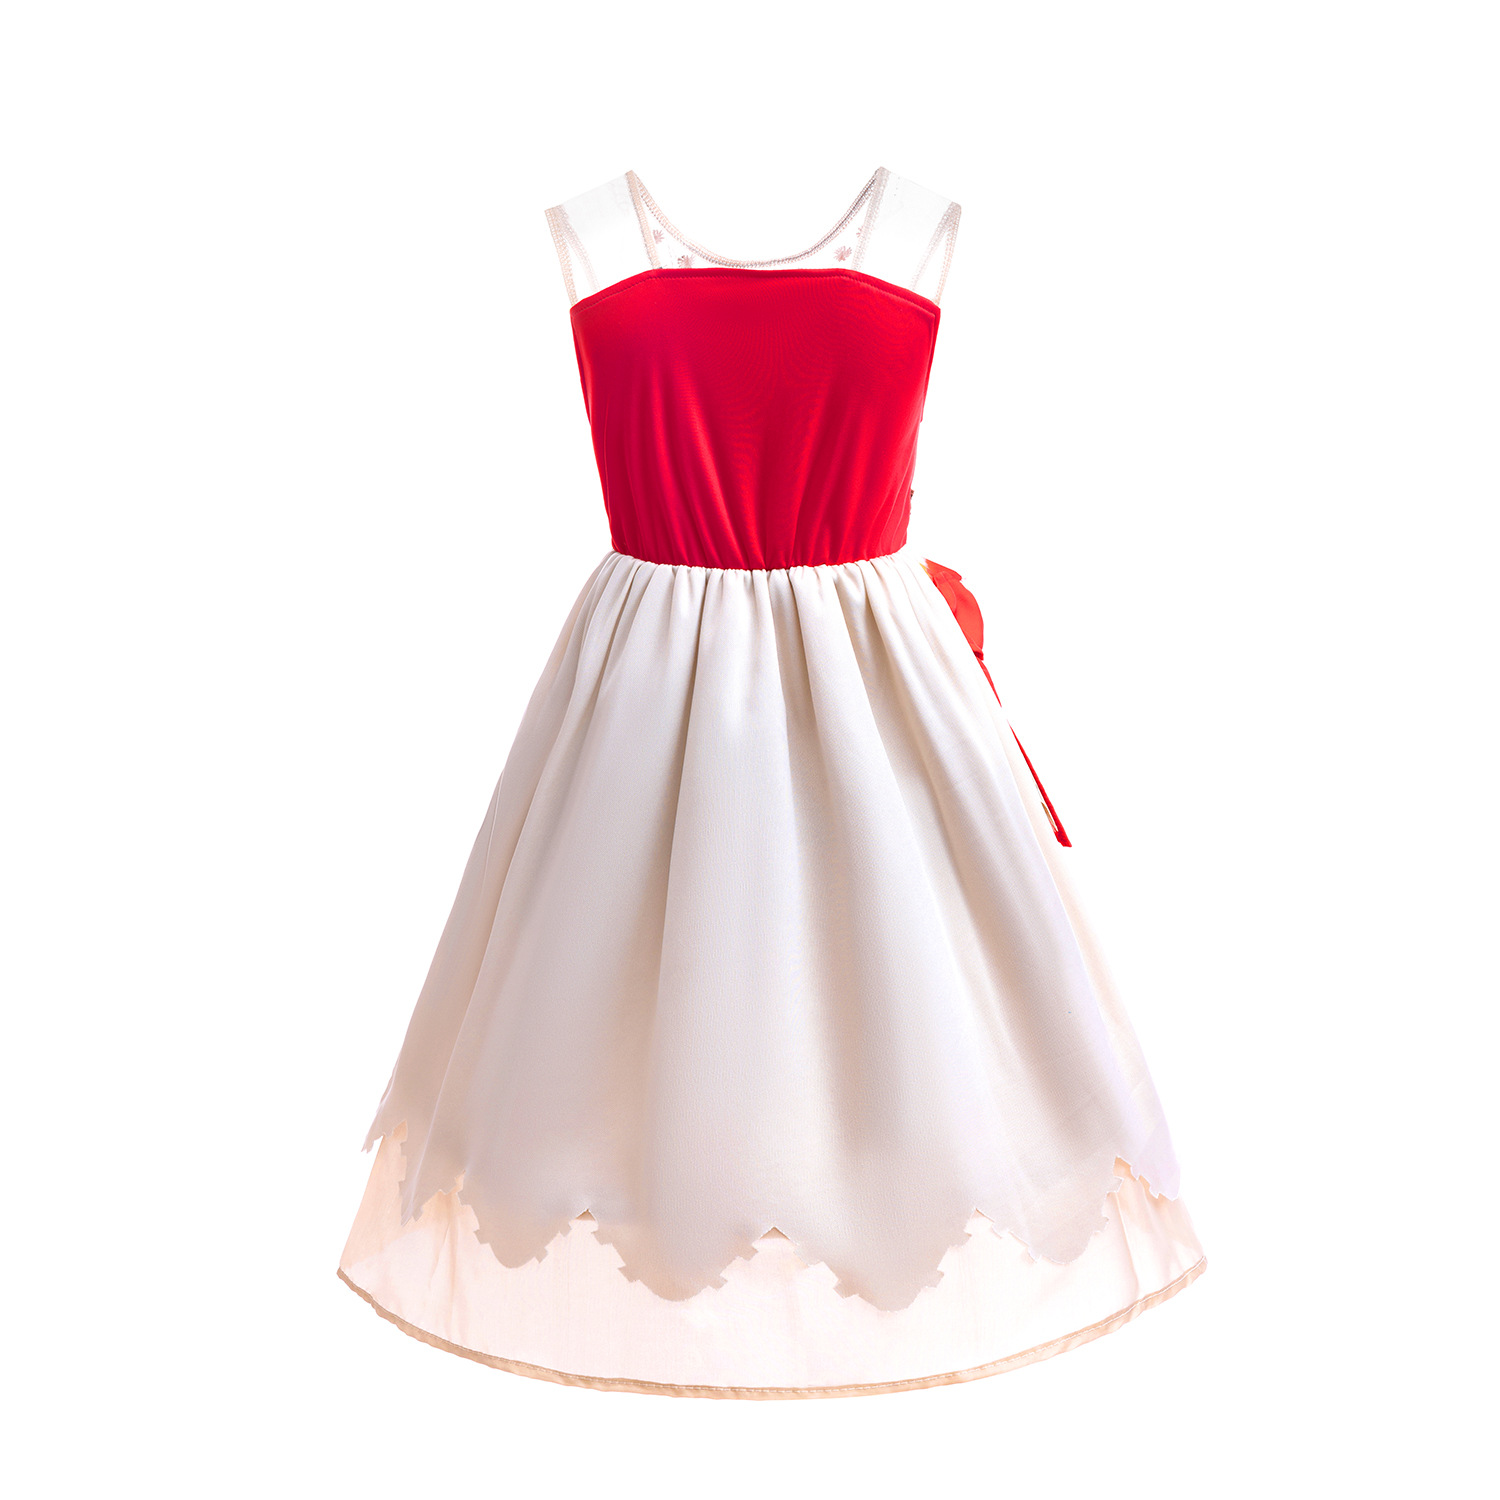 لباس دیزنی پرنسس دخترانه 3 تا13سال کد10428